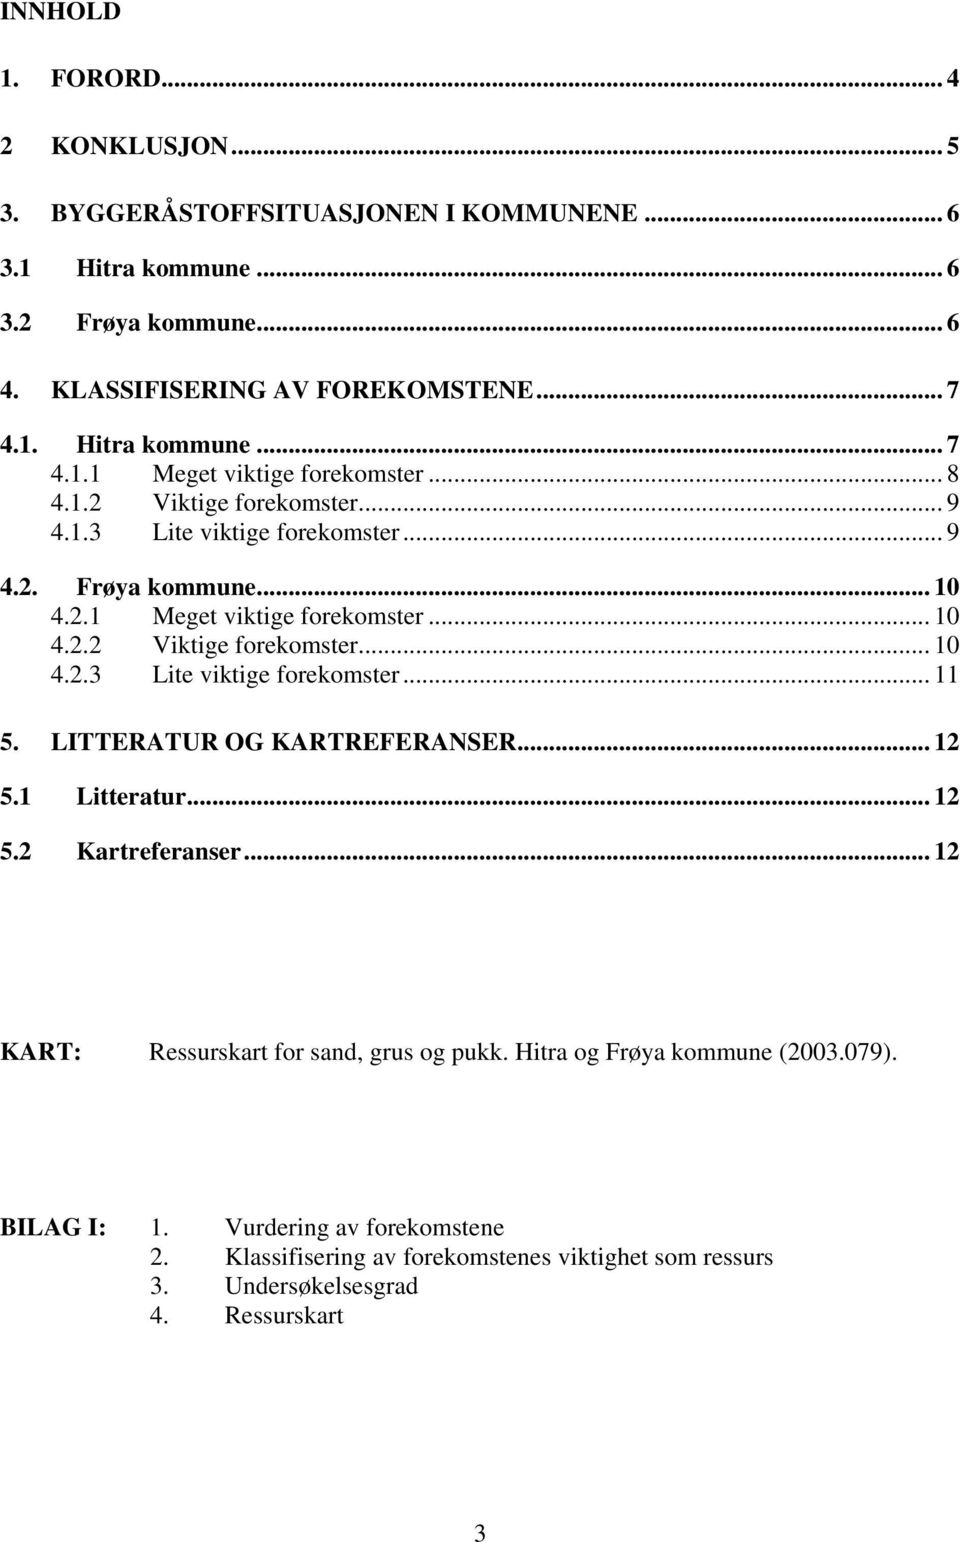 LITTERATUR OG KARTREFERANSER... 12 5.1 Litteratur... 12 5.2 Kartreferanser... 12 KART: Ressurskart for sand, grus og pukk. Hitra og Frøya kommune (2003.079). BILAG I: 1.